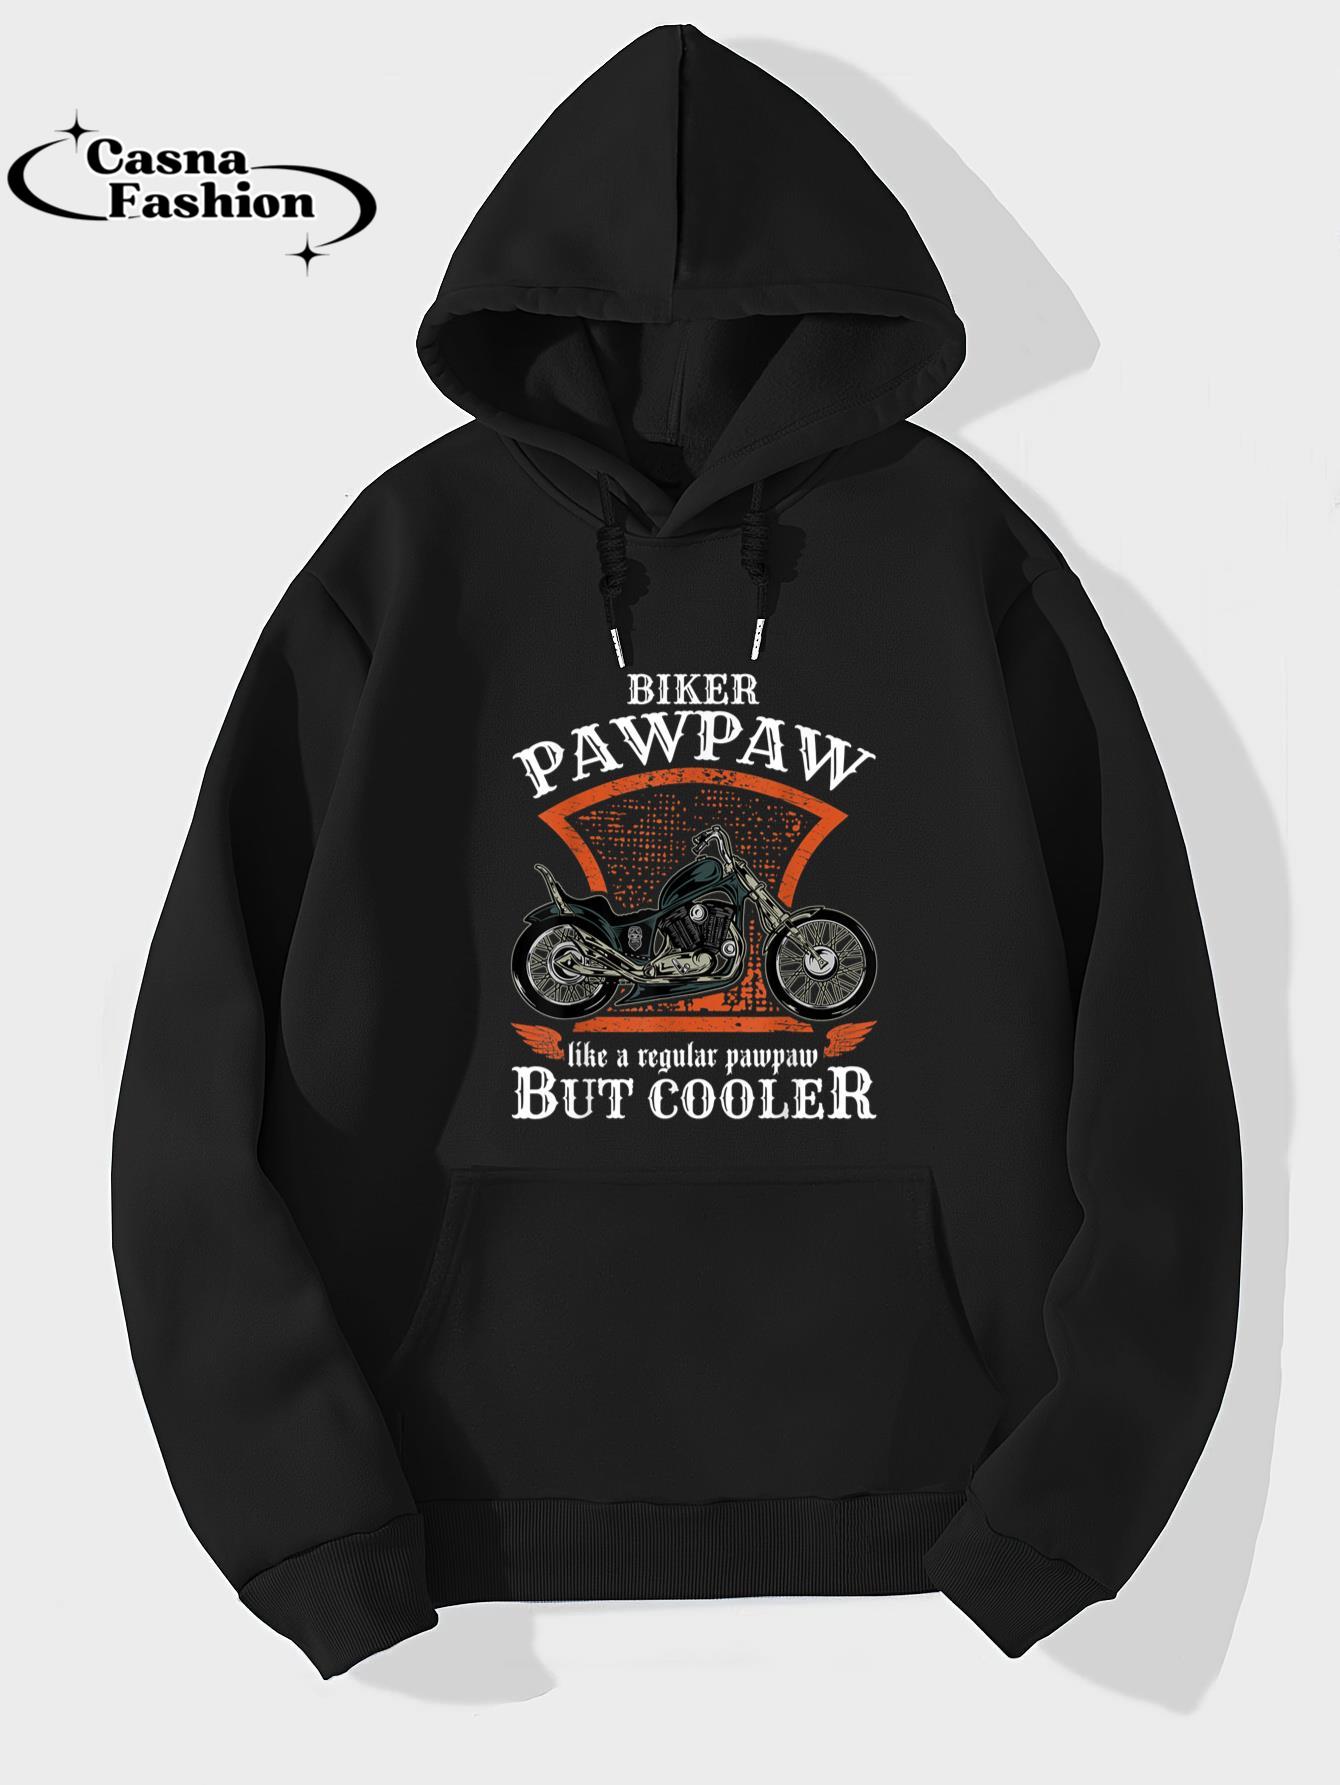 casnafashion_Hoodie_Vintage Biker Pawpaw Retro Motorcycle Gift for Seniors T-Shirt_hoodie_black hoodie